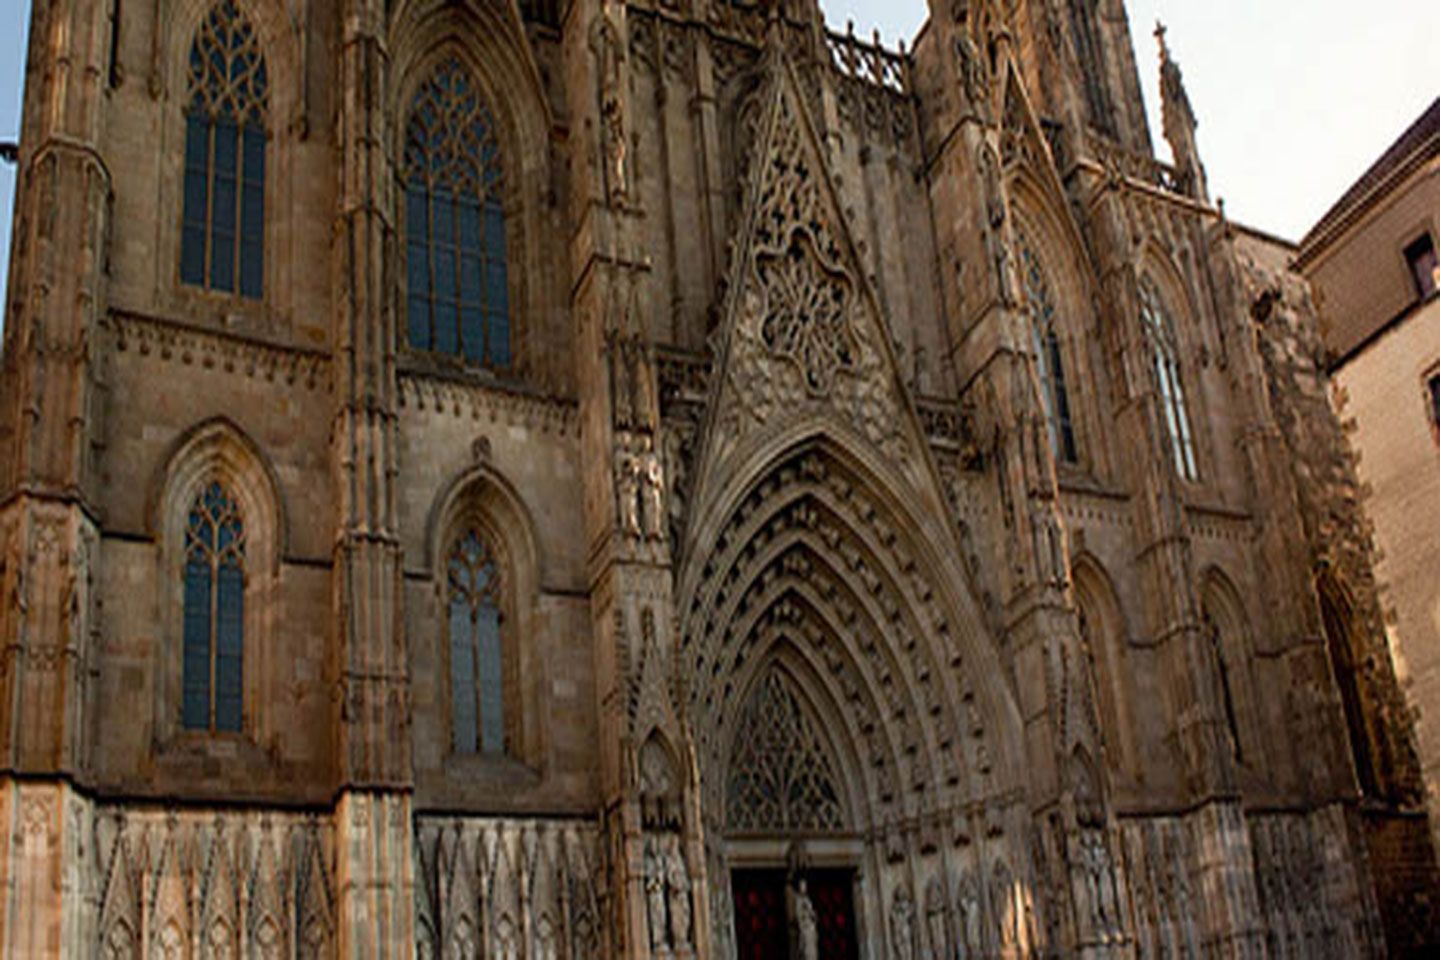 gothic quarter barcelona